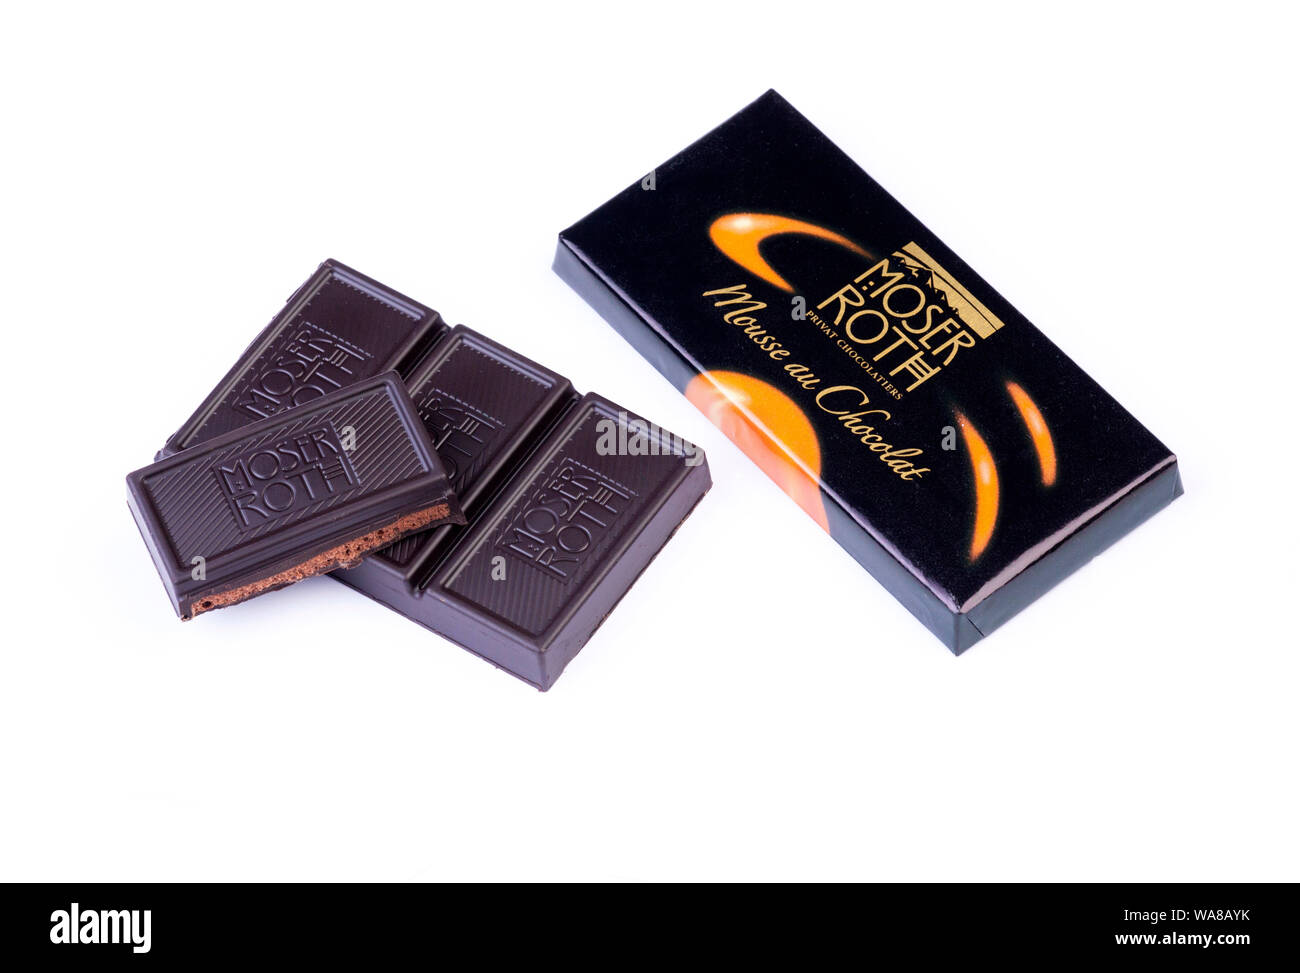 Moser Roth dunkle Schokolade ausschließlich von Aldi verkauft. Stockfoto